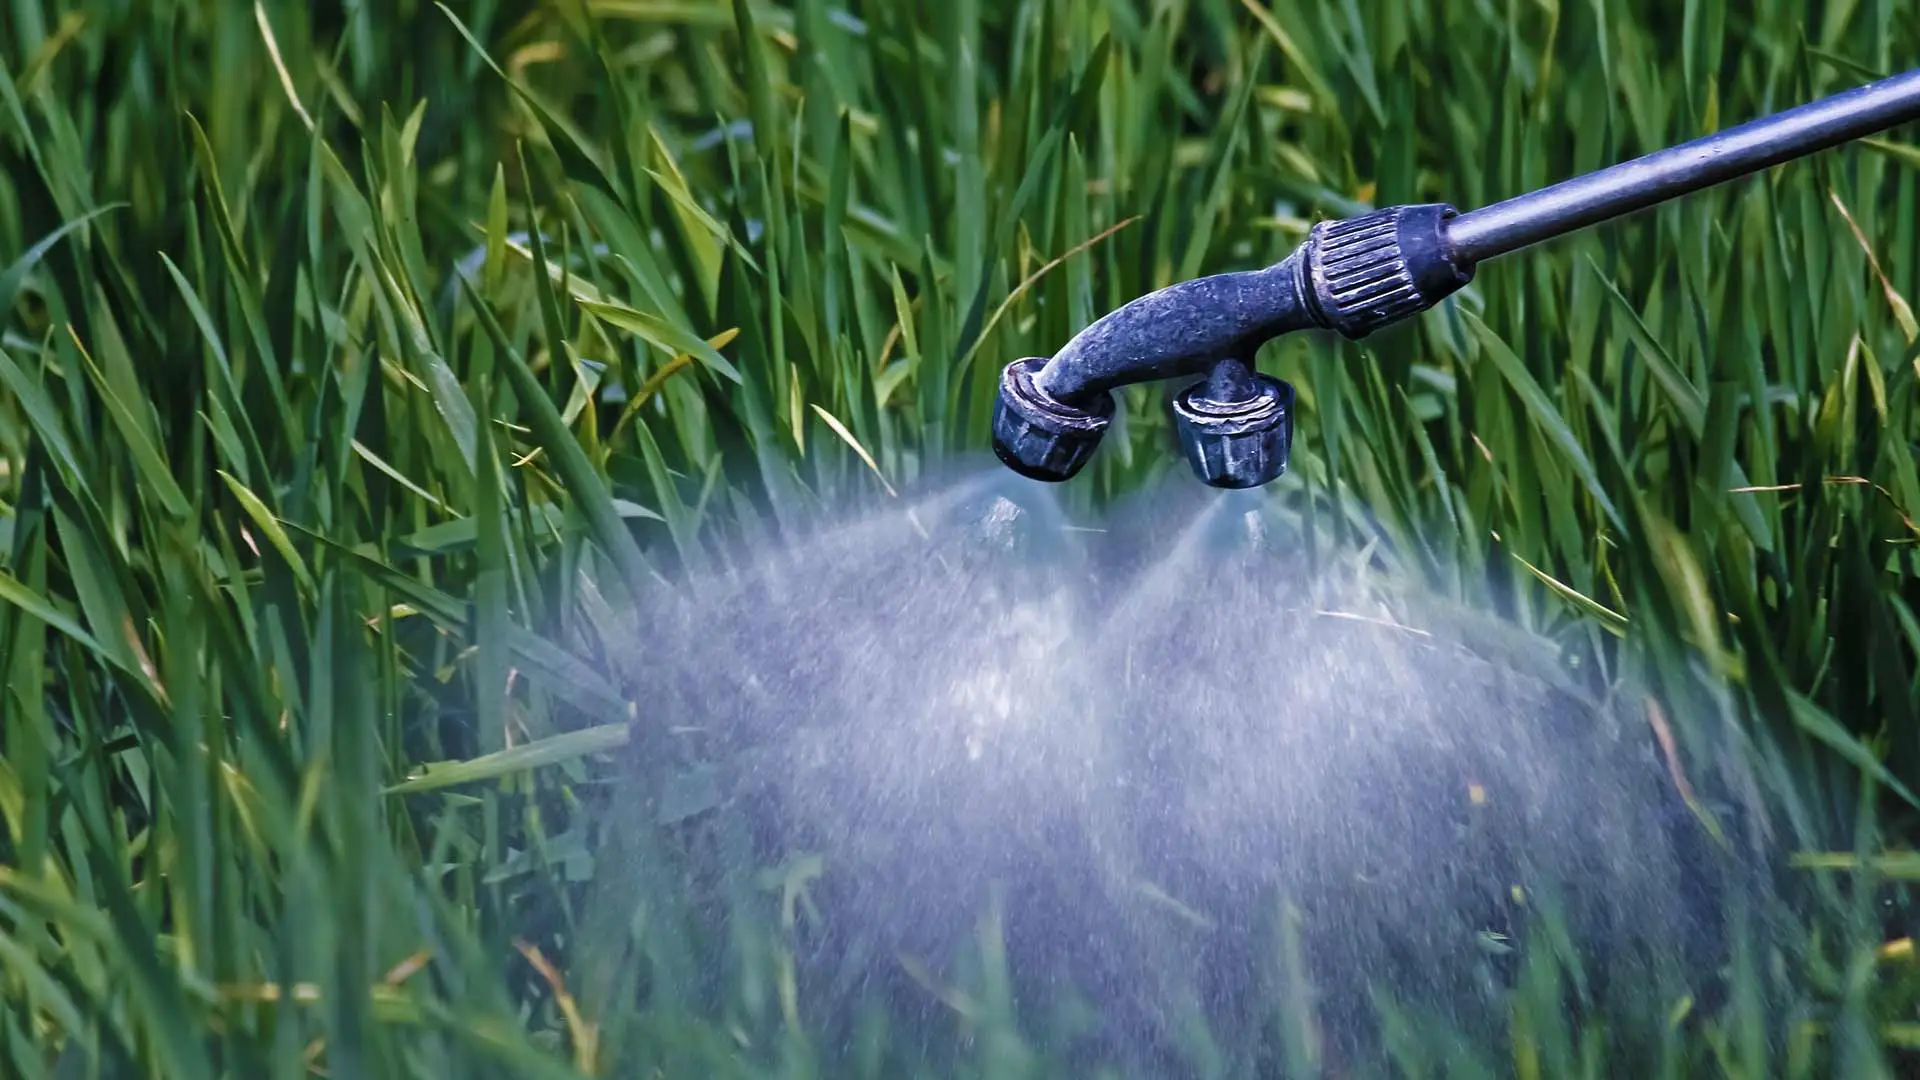 Spraying liquid fertilizer on lawn grass near Olivesburg, Ohio.